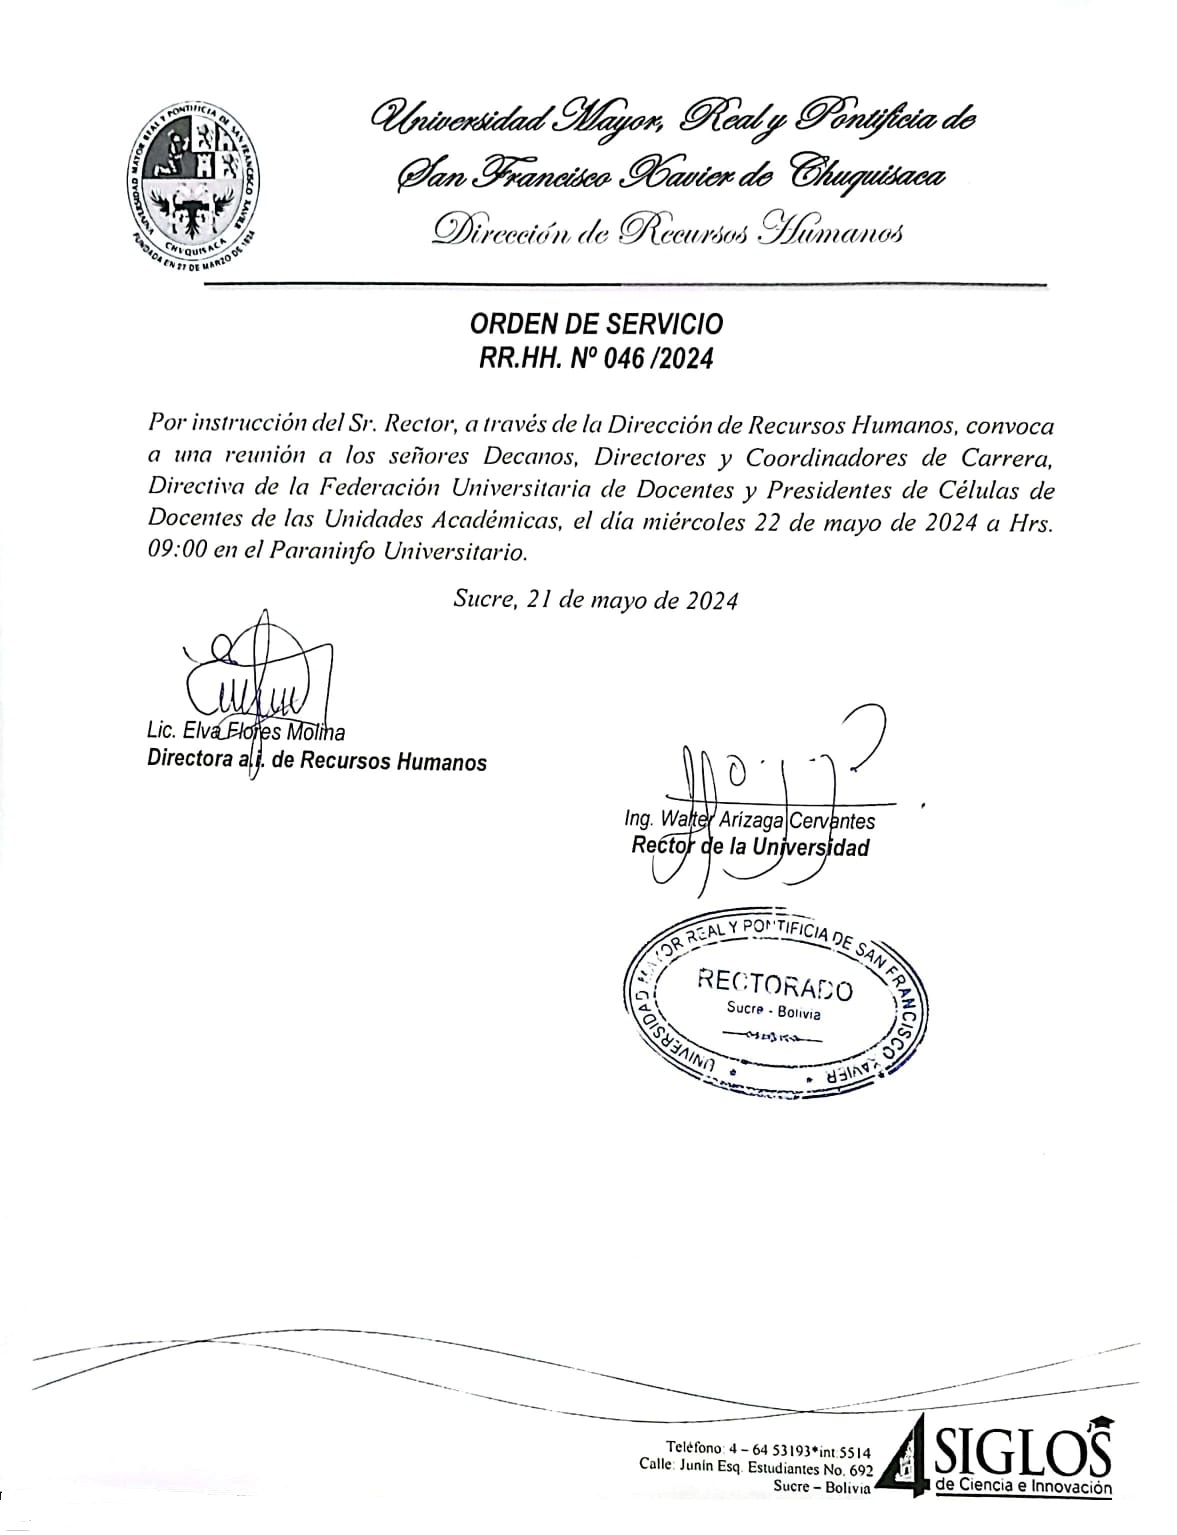 ORDEN DE SERVICIO RR.HH. Nº 046/2024, REUNIÓN CON AUTORIDADES, FUD Y PRESIDENTES DE CÉLULA.